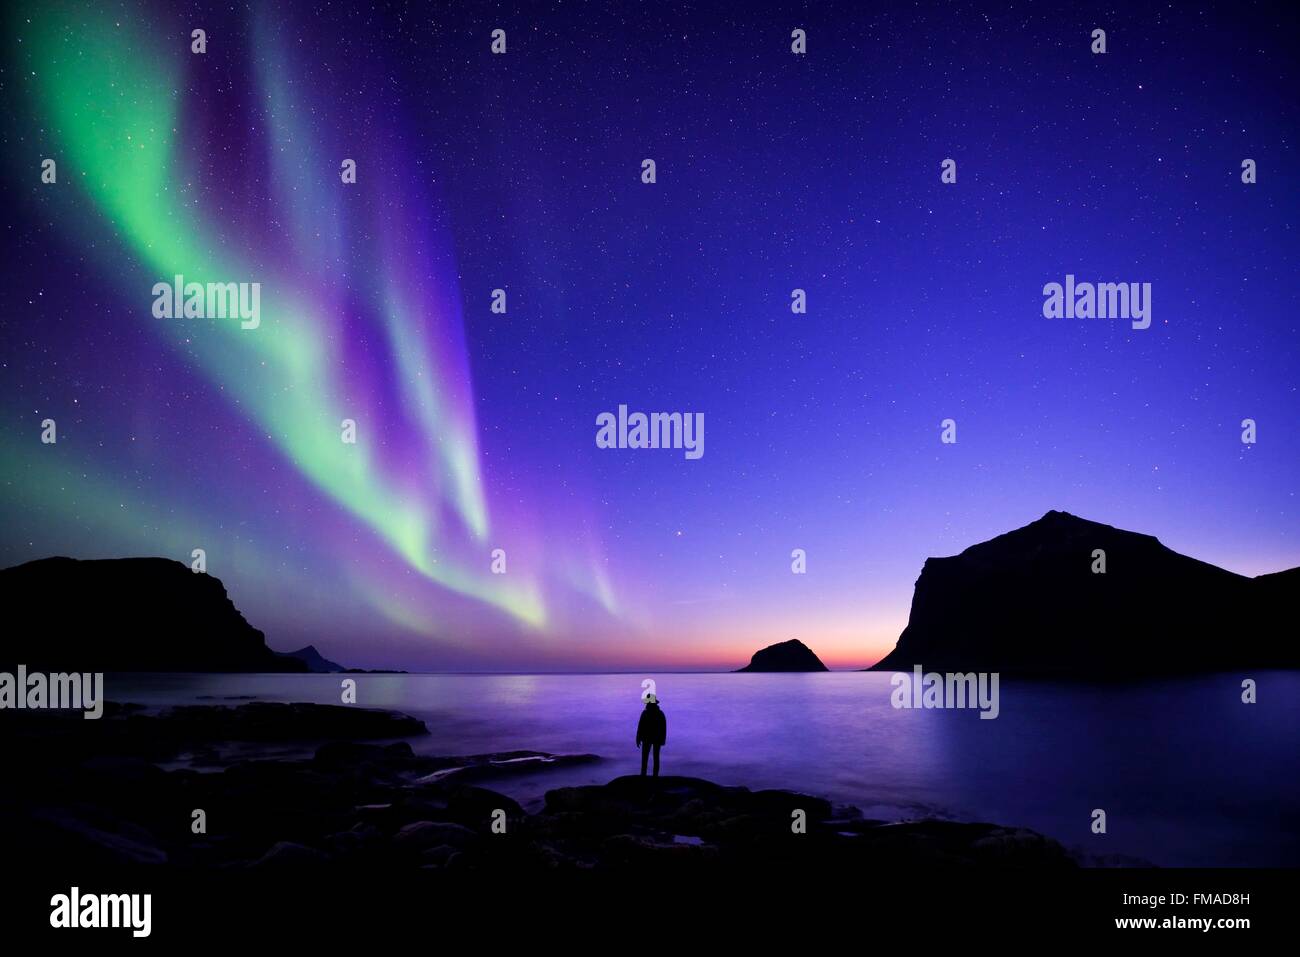 Norvegia, Nordland, isole Lofoten, isola Vestvagoy, Vik beach, silhouette di donna e di luci del nord (aurora boreale) Foto Stock